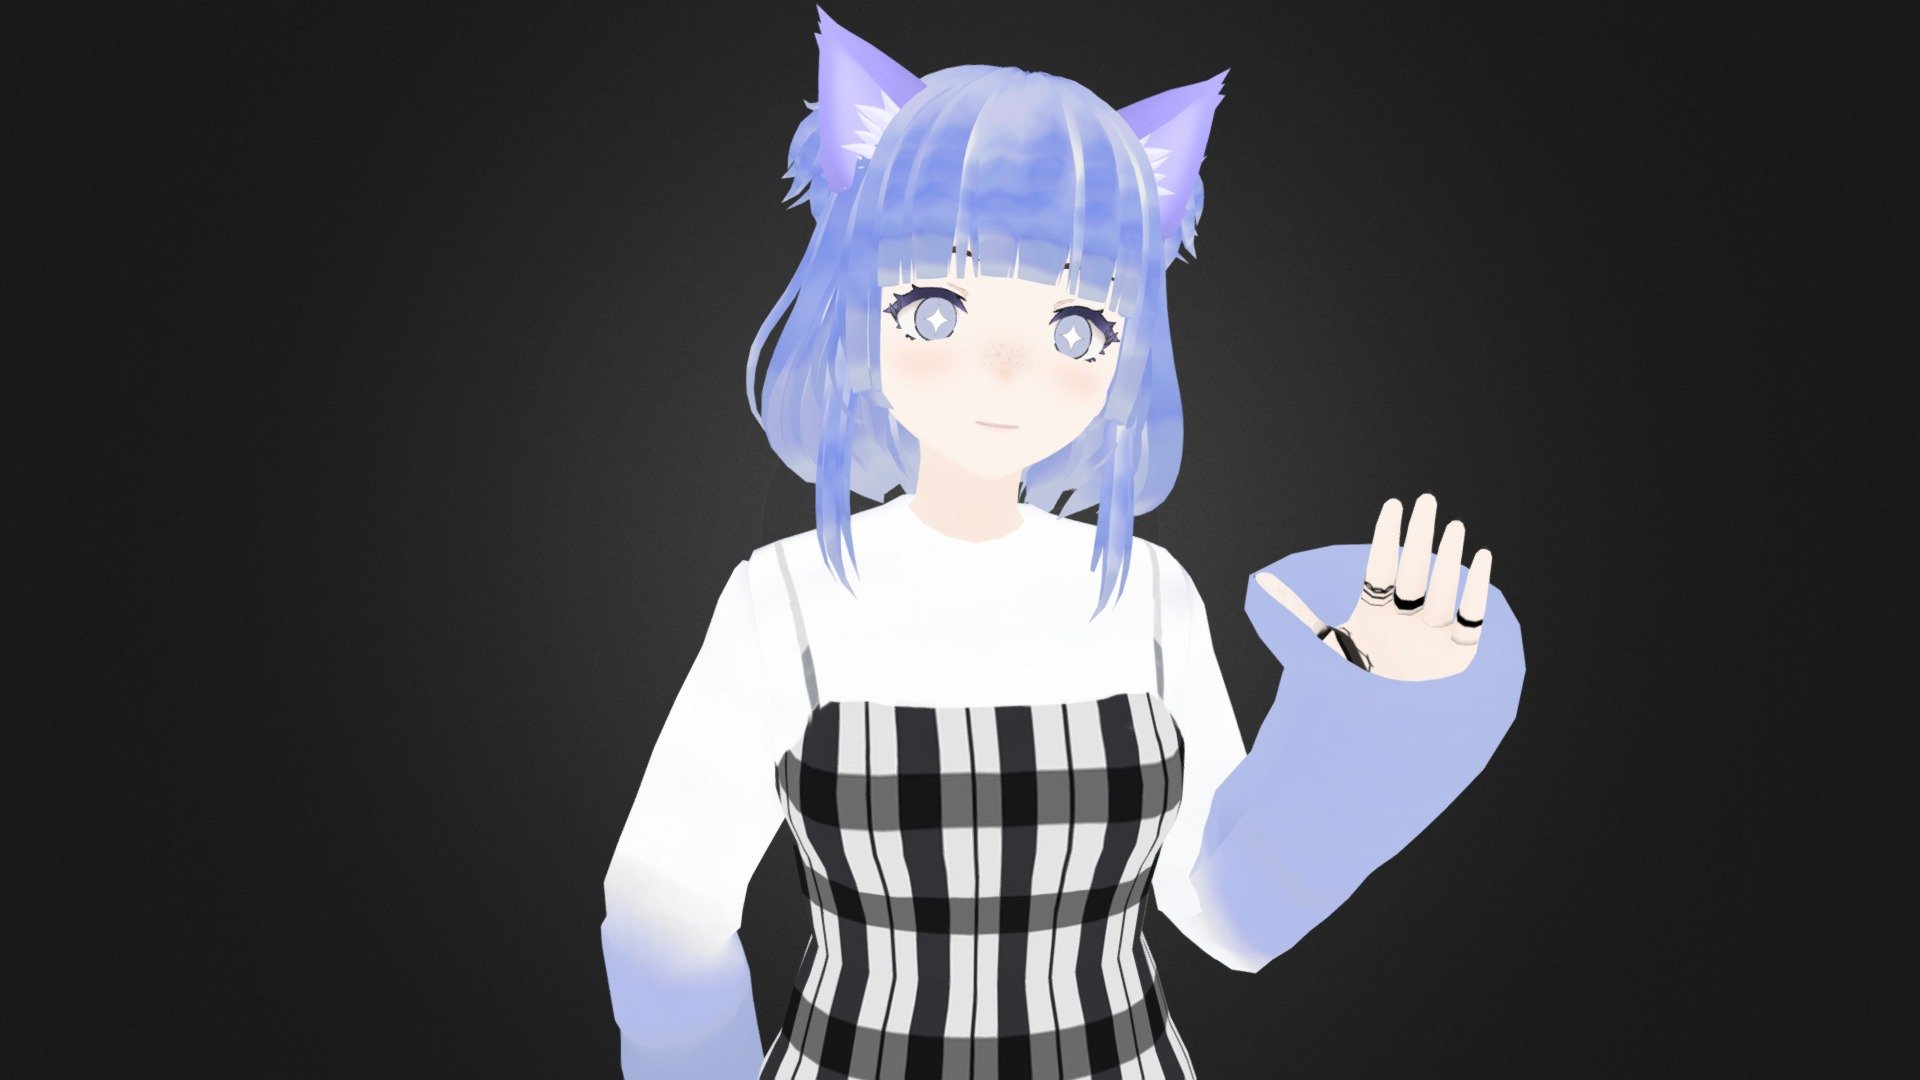 Hina kamisama ni natta hi VRChat 3D model rigged